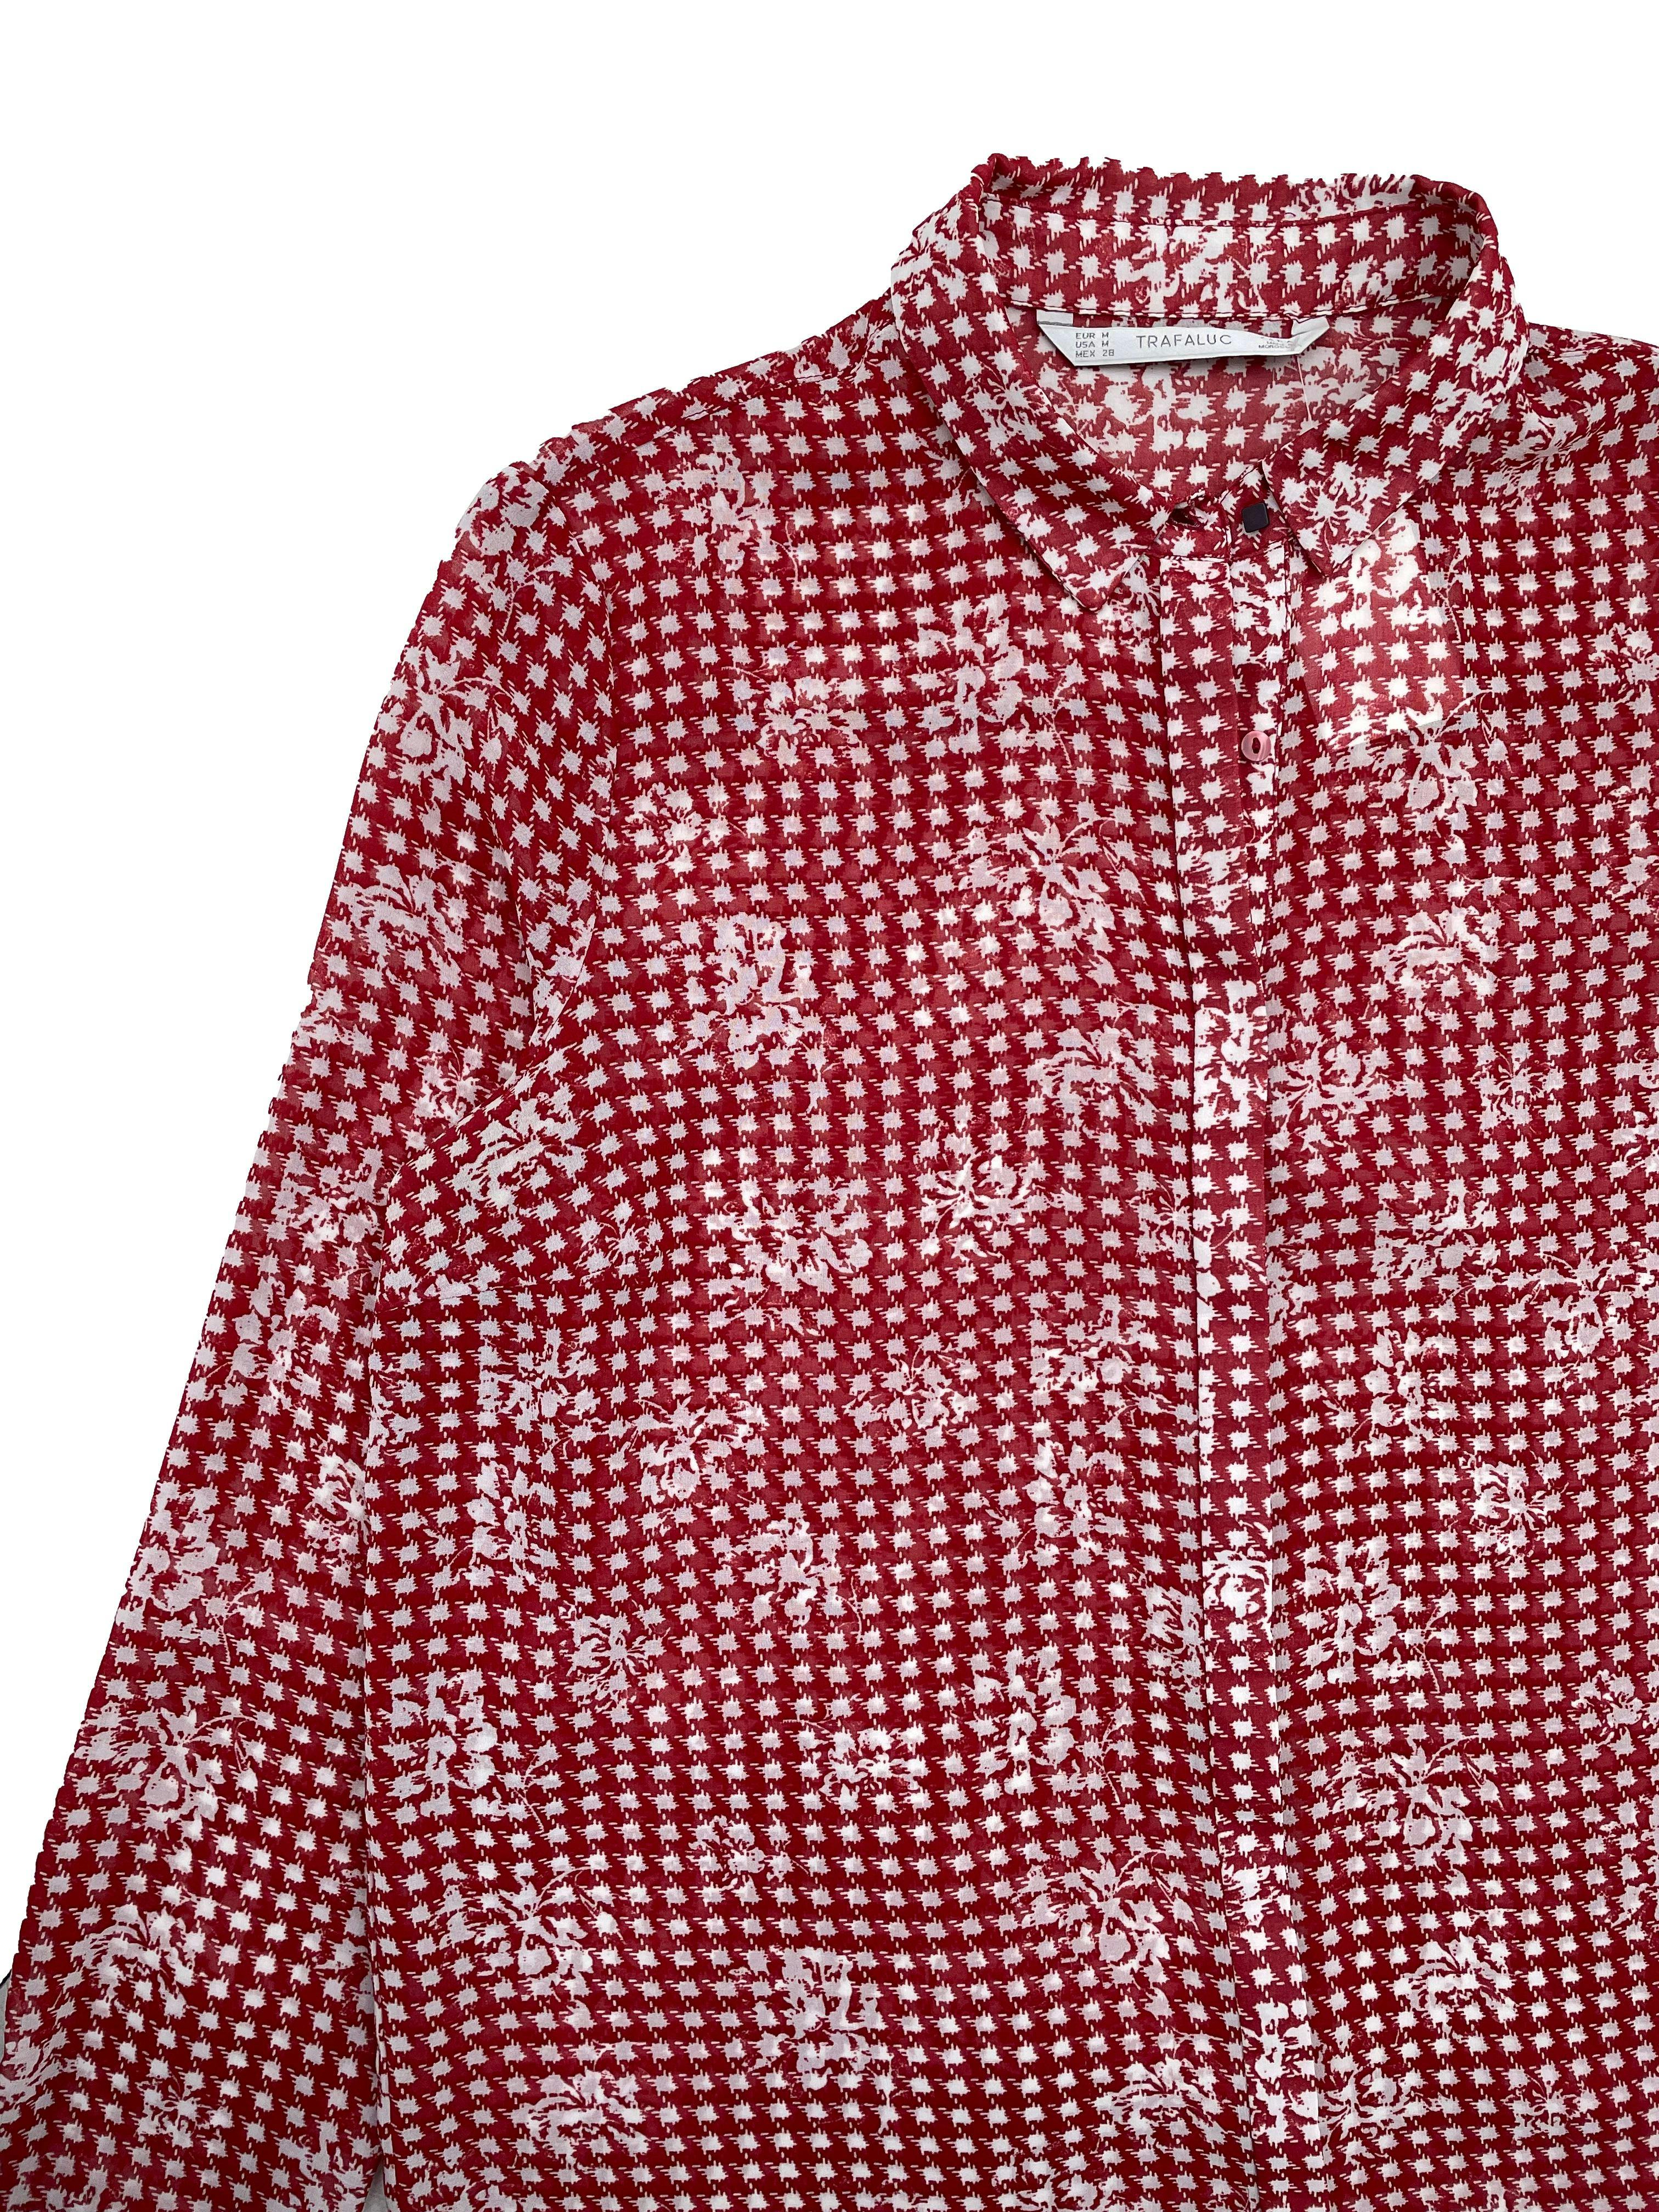 Blusa Zara de gasa con estampado en blanco y rojo, puños blancos y cuello con botones negros. Busto 104cm, Largo 60cm.